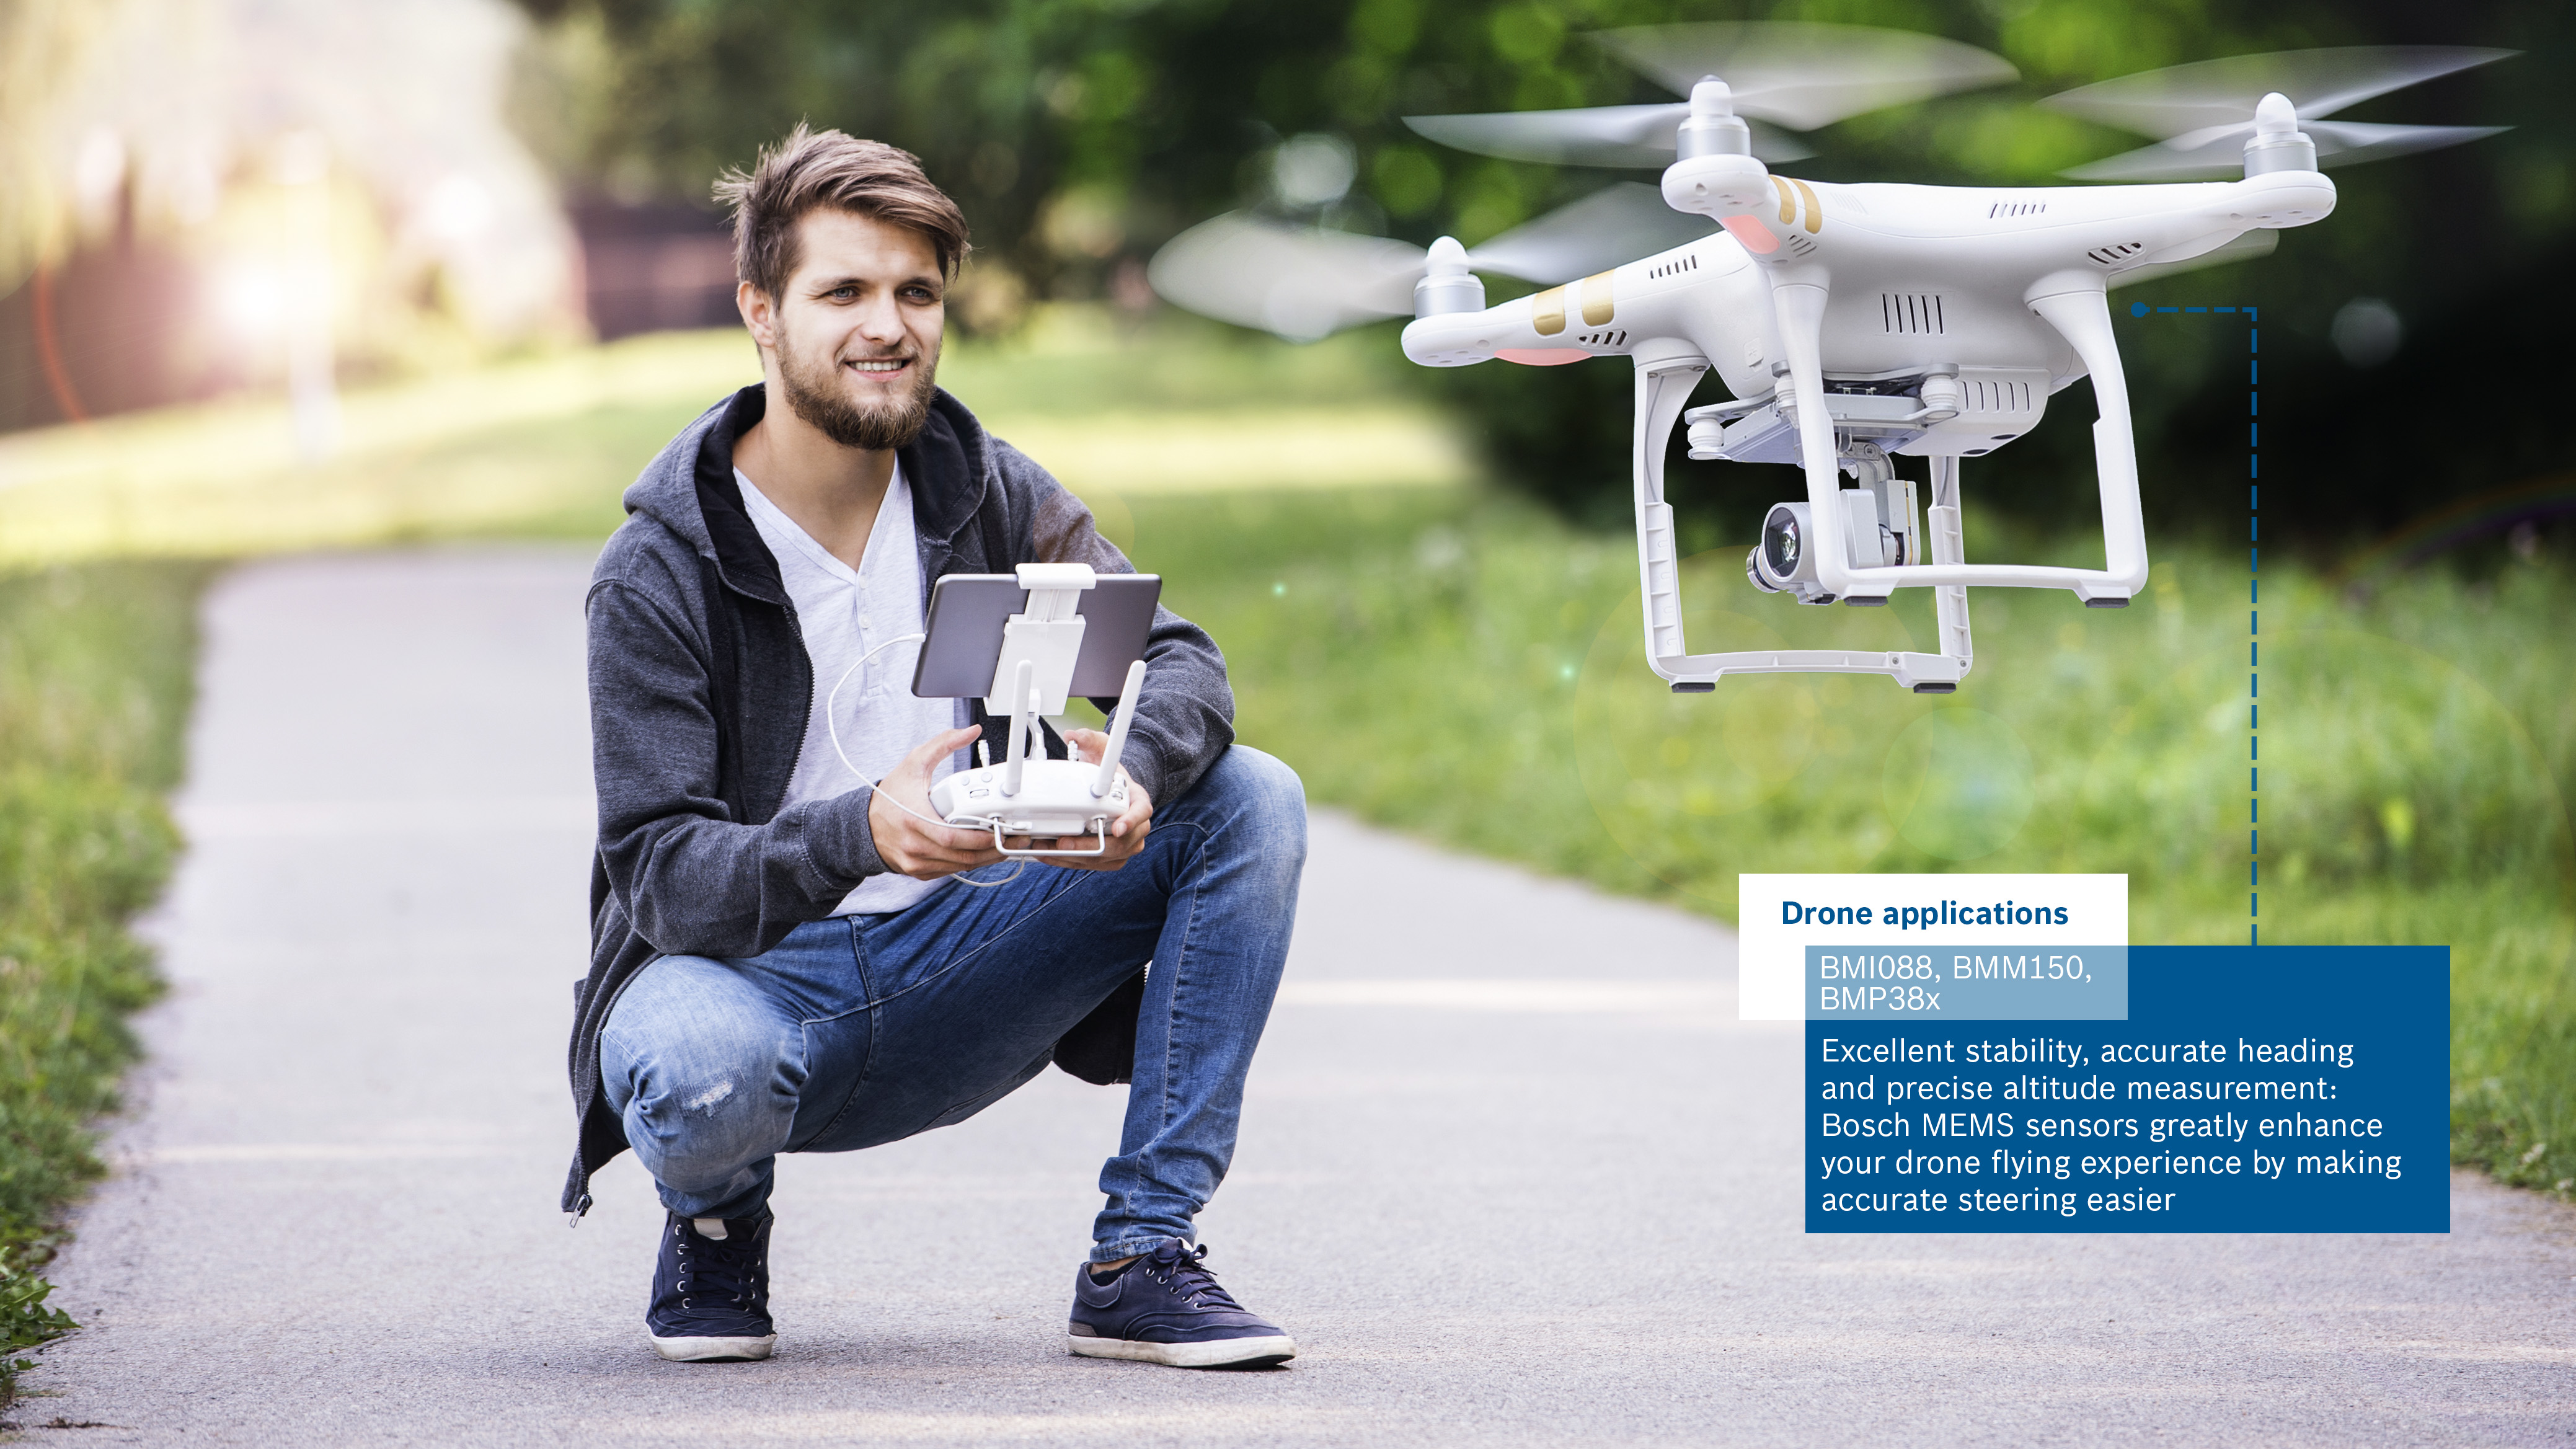 Bosch lancia il suo IMU ad alte prestazioni per droni e applicazioni nel campo della robotica al CES 2018